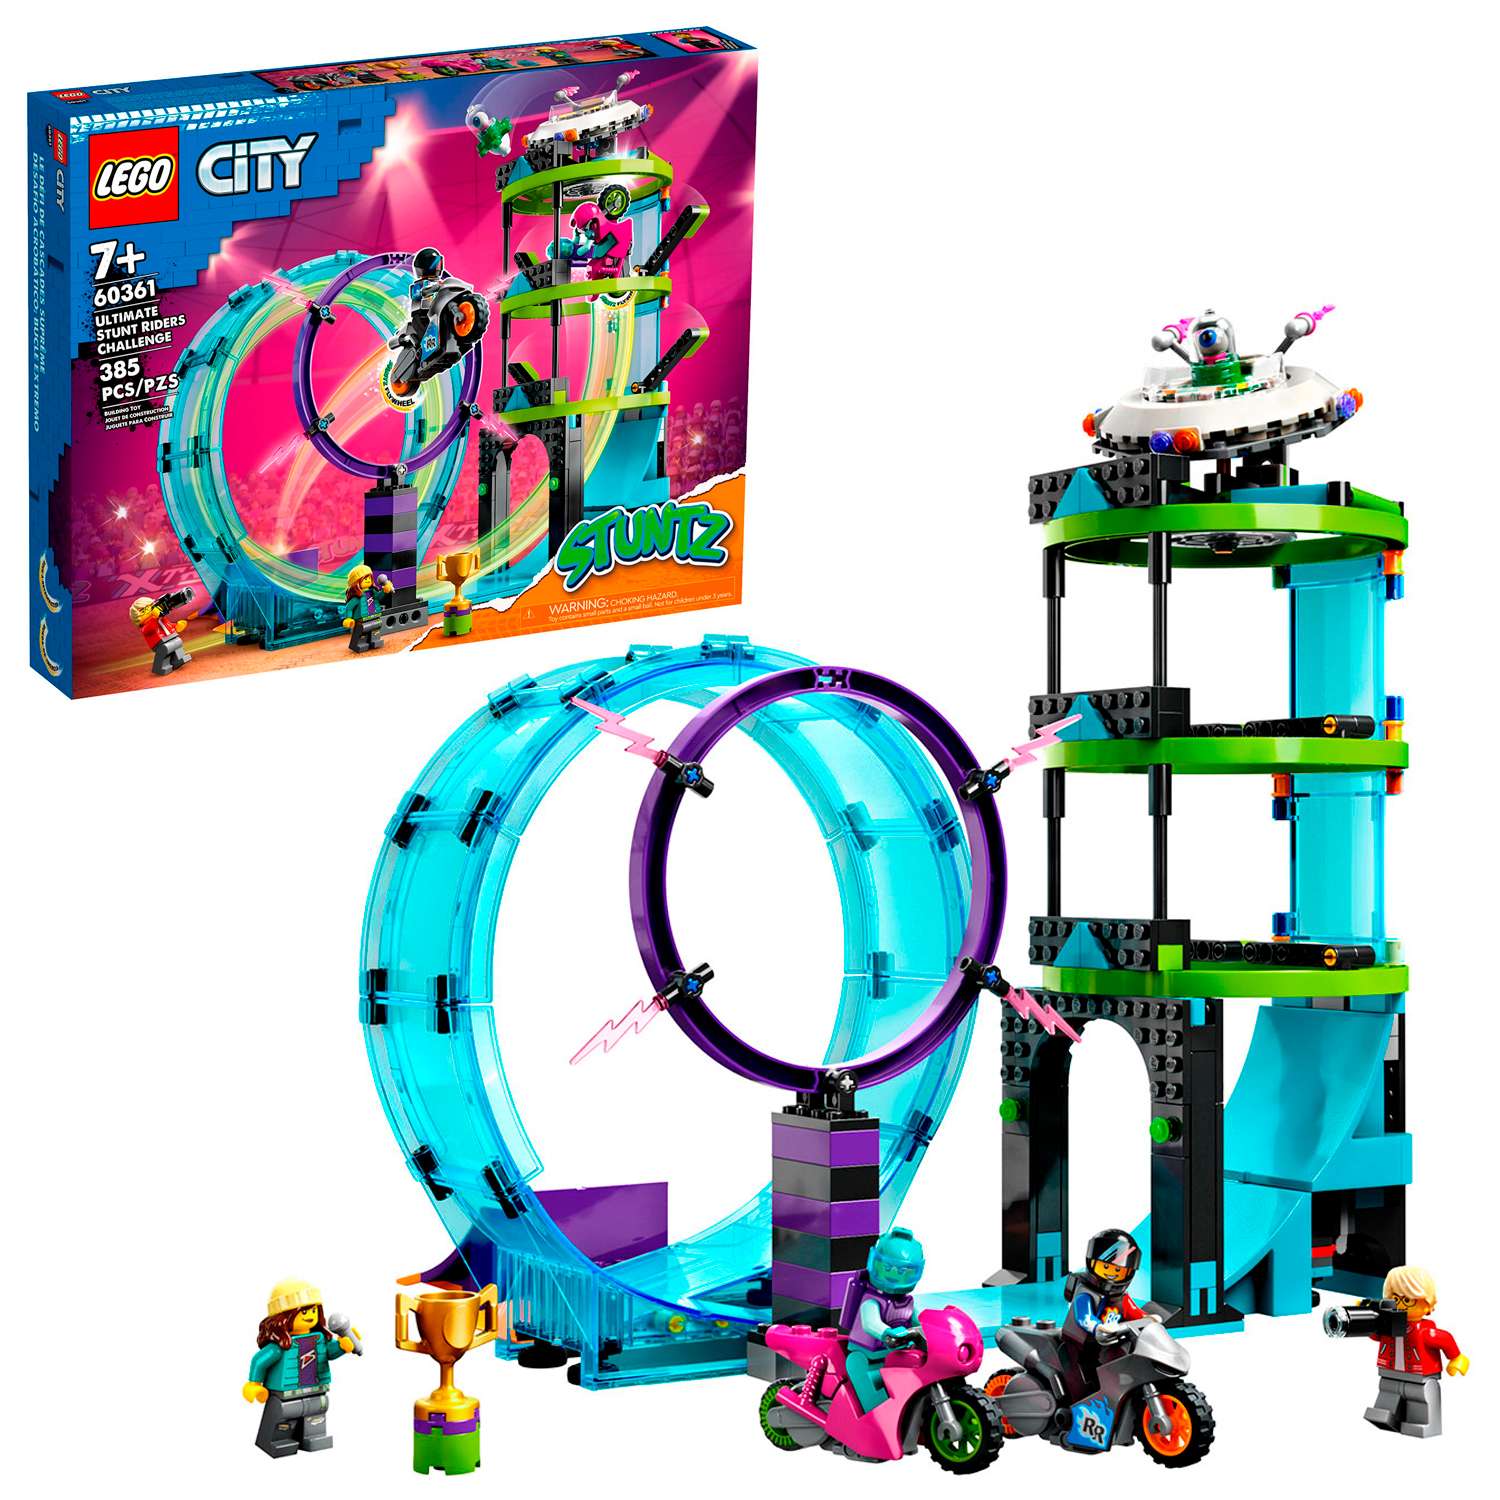 Конструктор детский LEGO City Stuntz Главное каскадерское испытание 60361 - фото 2